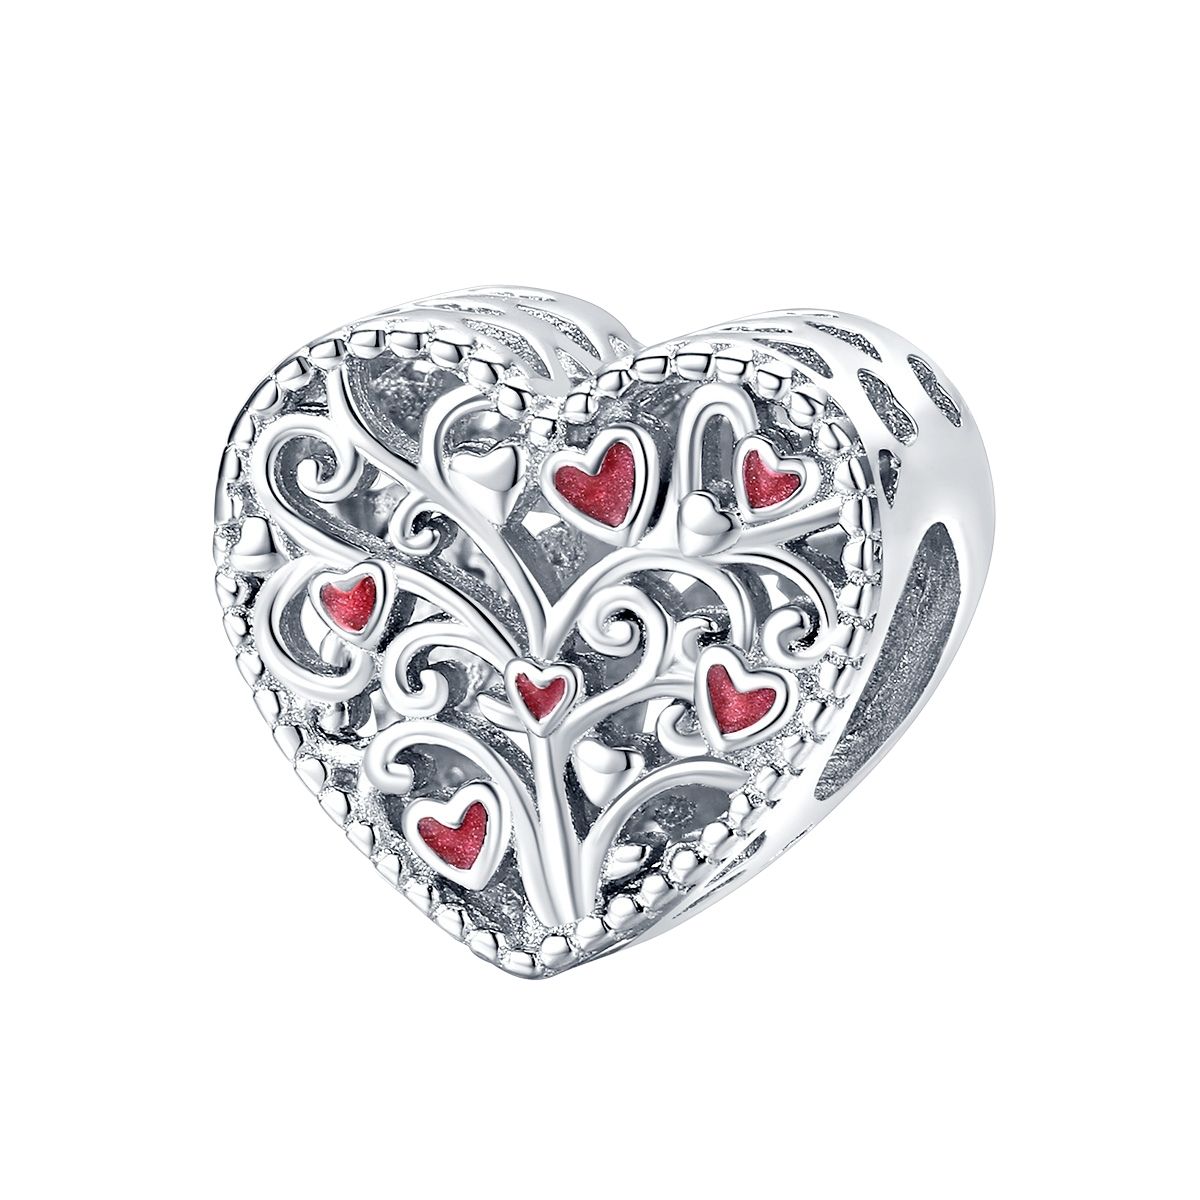 Hart levensboom met hartjes  bead  Zilverana  geschikt voor Biagi , Pandora , Trollbeads armband  925 zilver